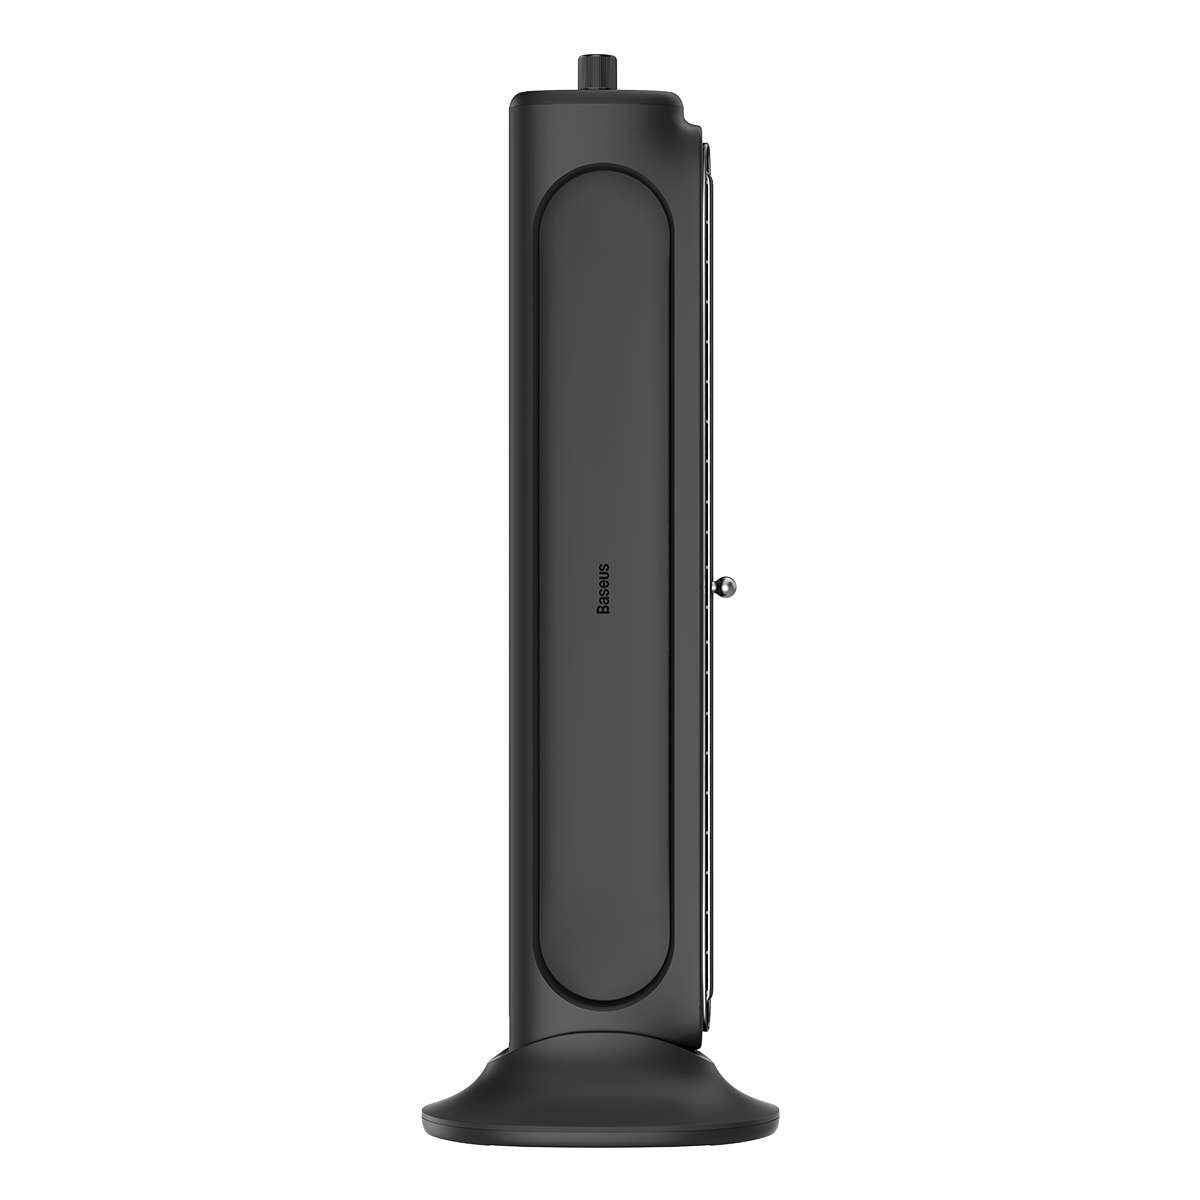 Kép 4/18 - Baseus ventilátor, Asztali vagy monitorra szereplhető, fekete (ACQS000001)